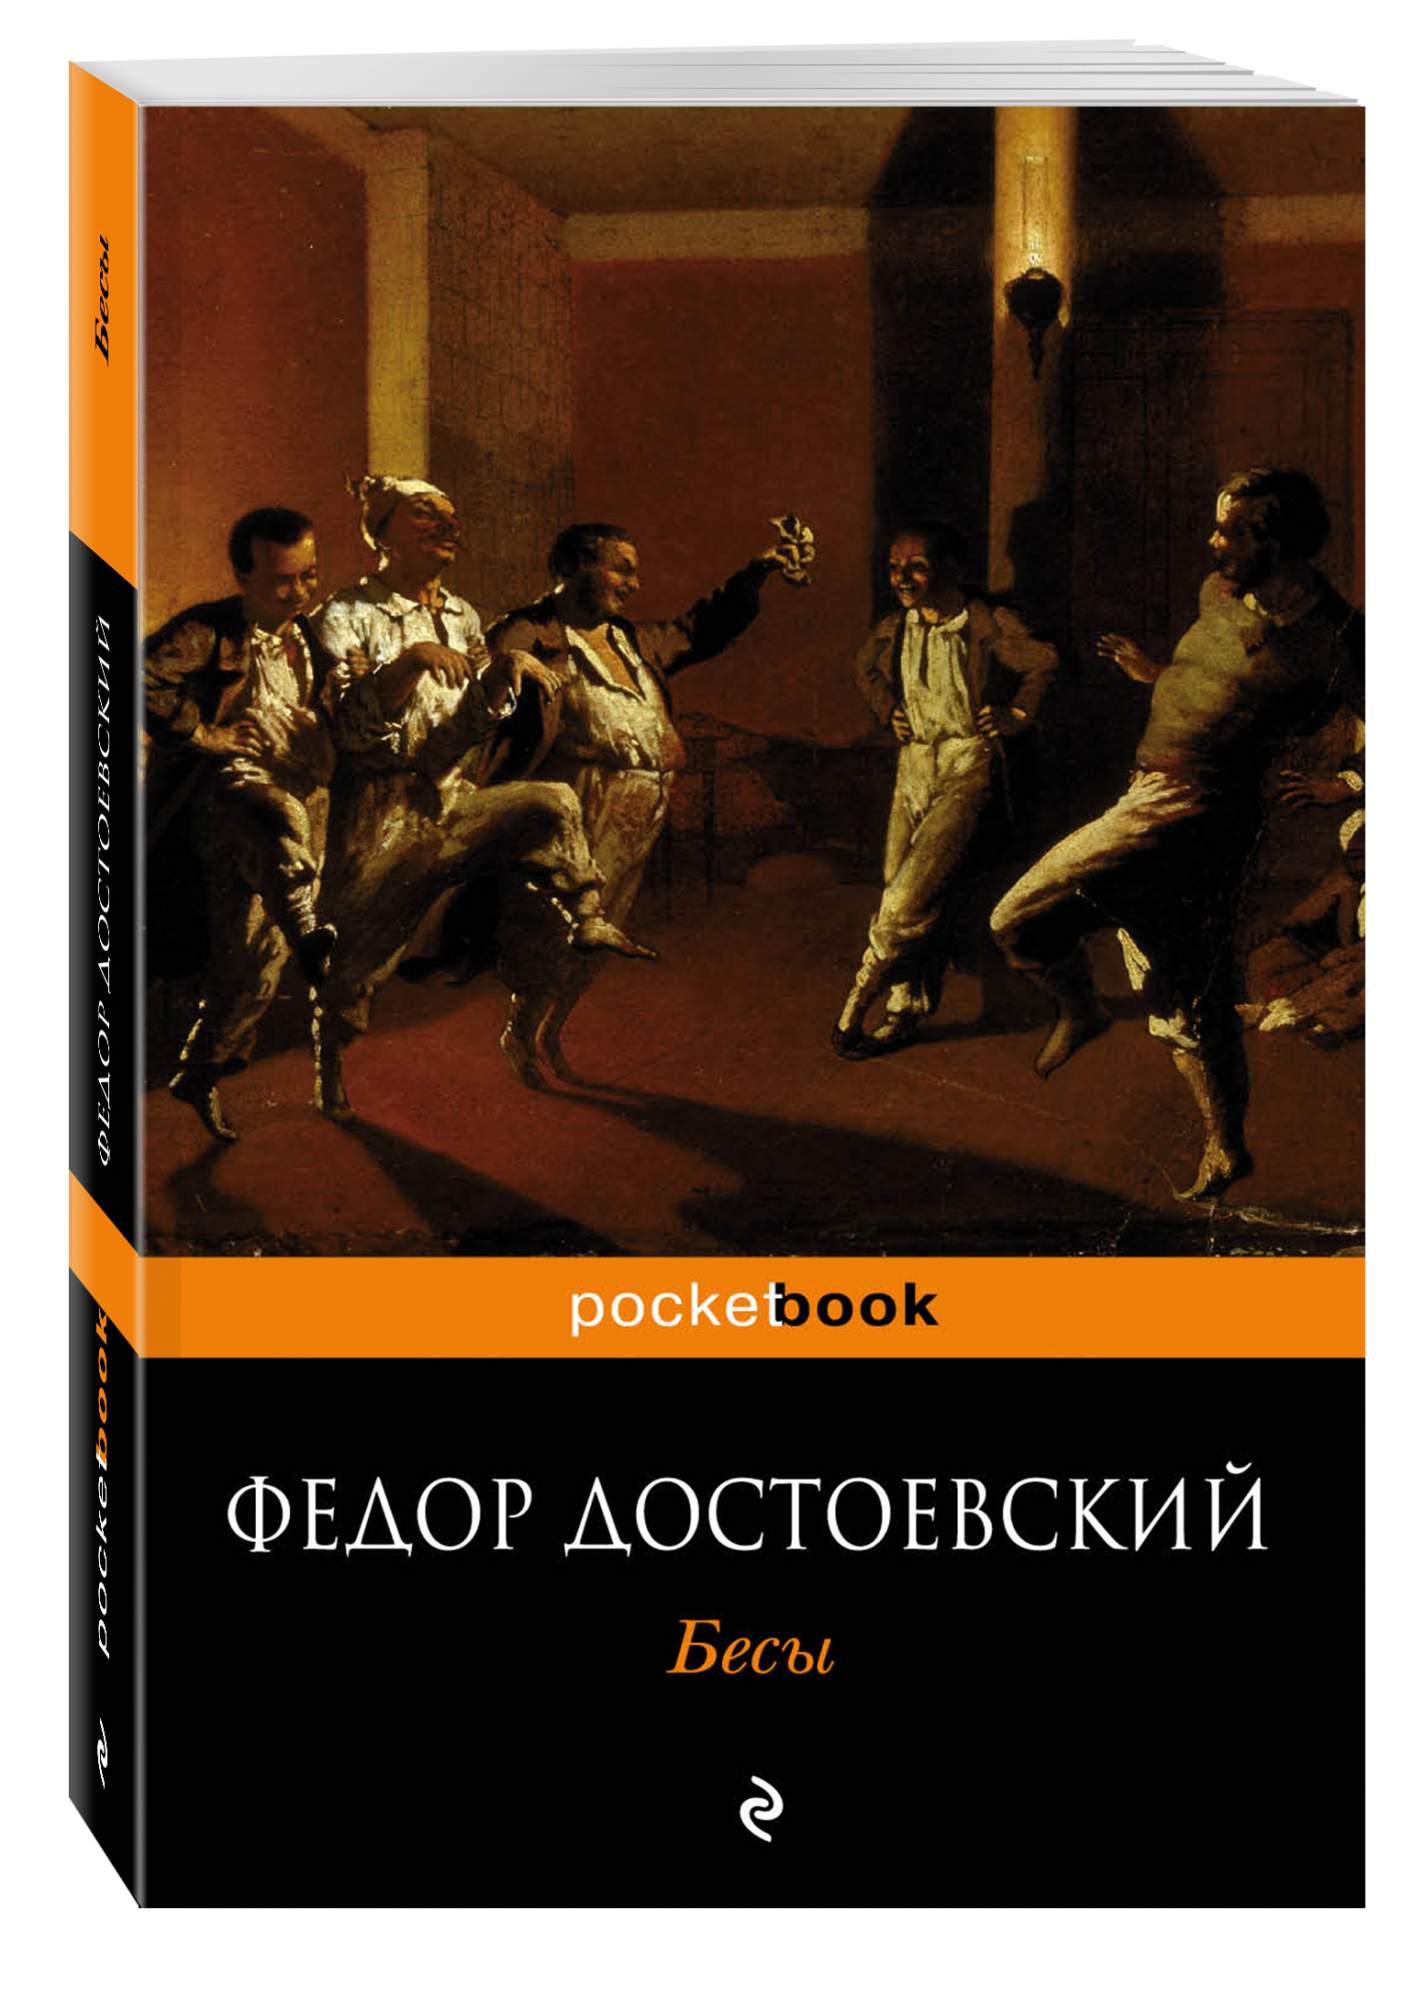 Обложка романа Достоевского бесы